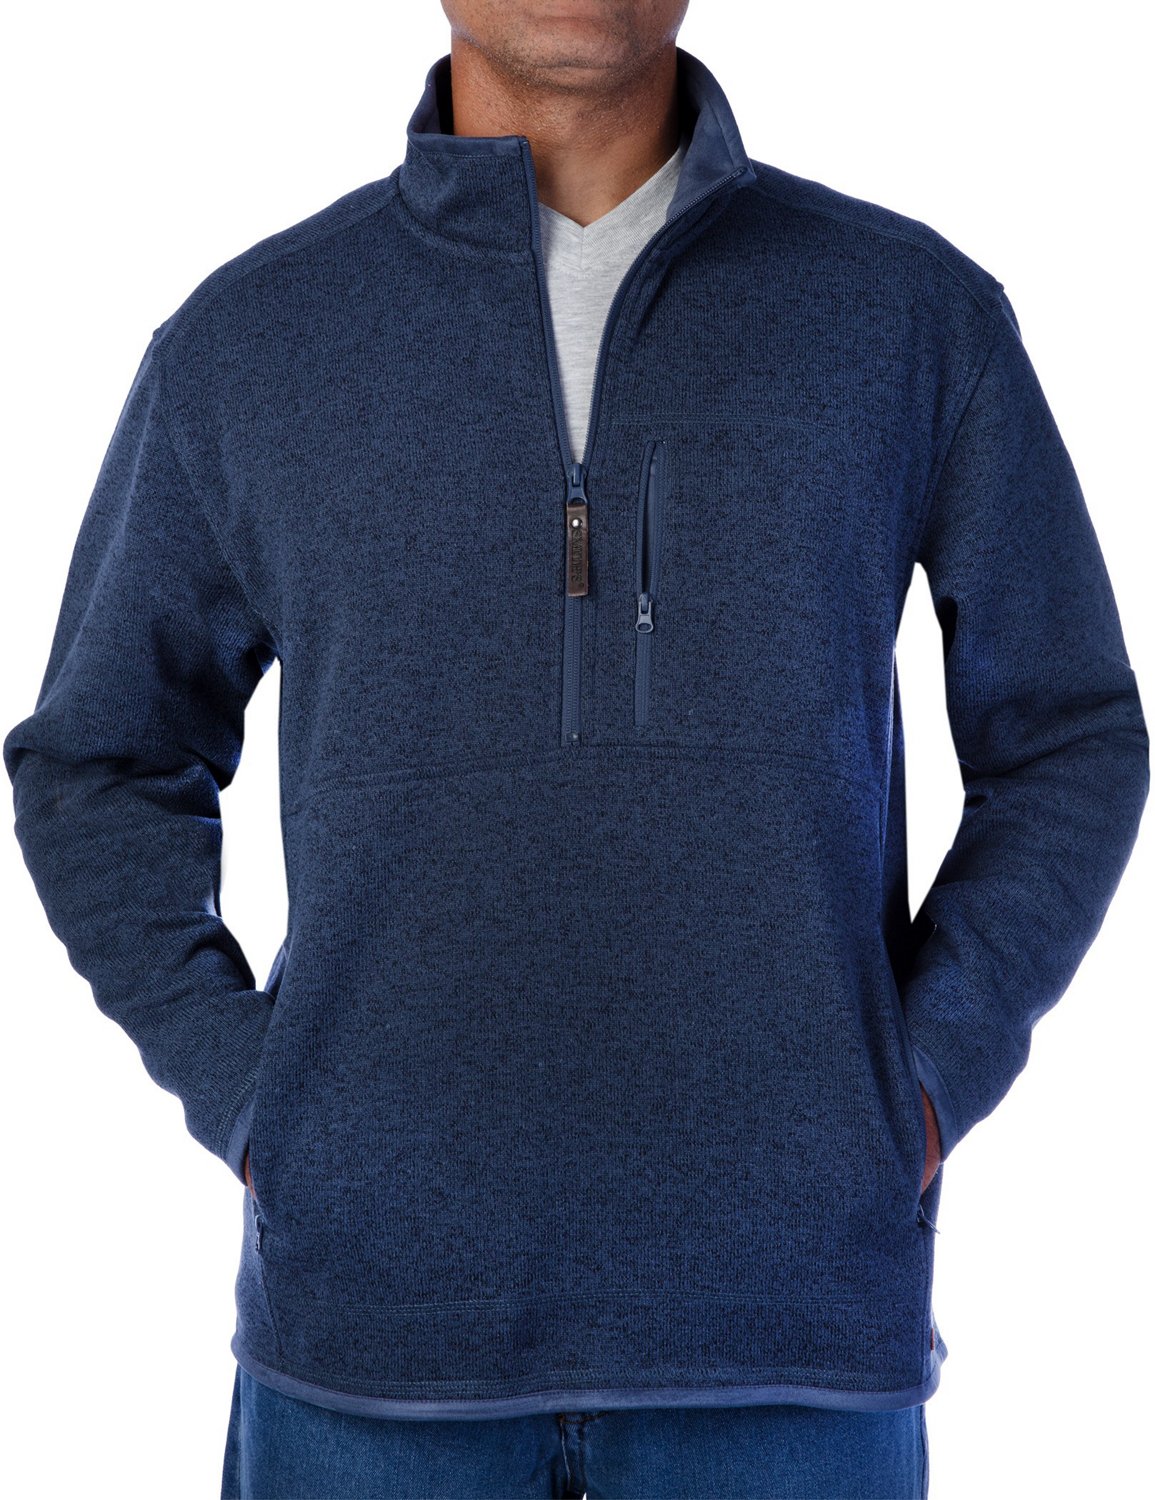 Smith's Workwear Men's 1/4 Zip Sweater Fleece Jacket | Academy